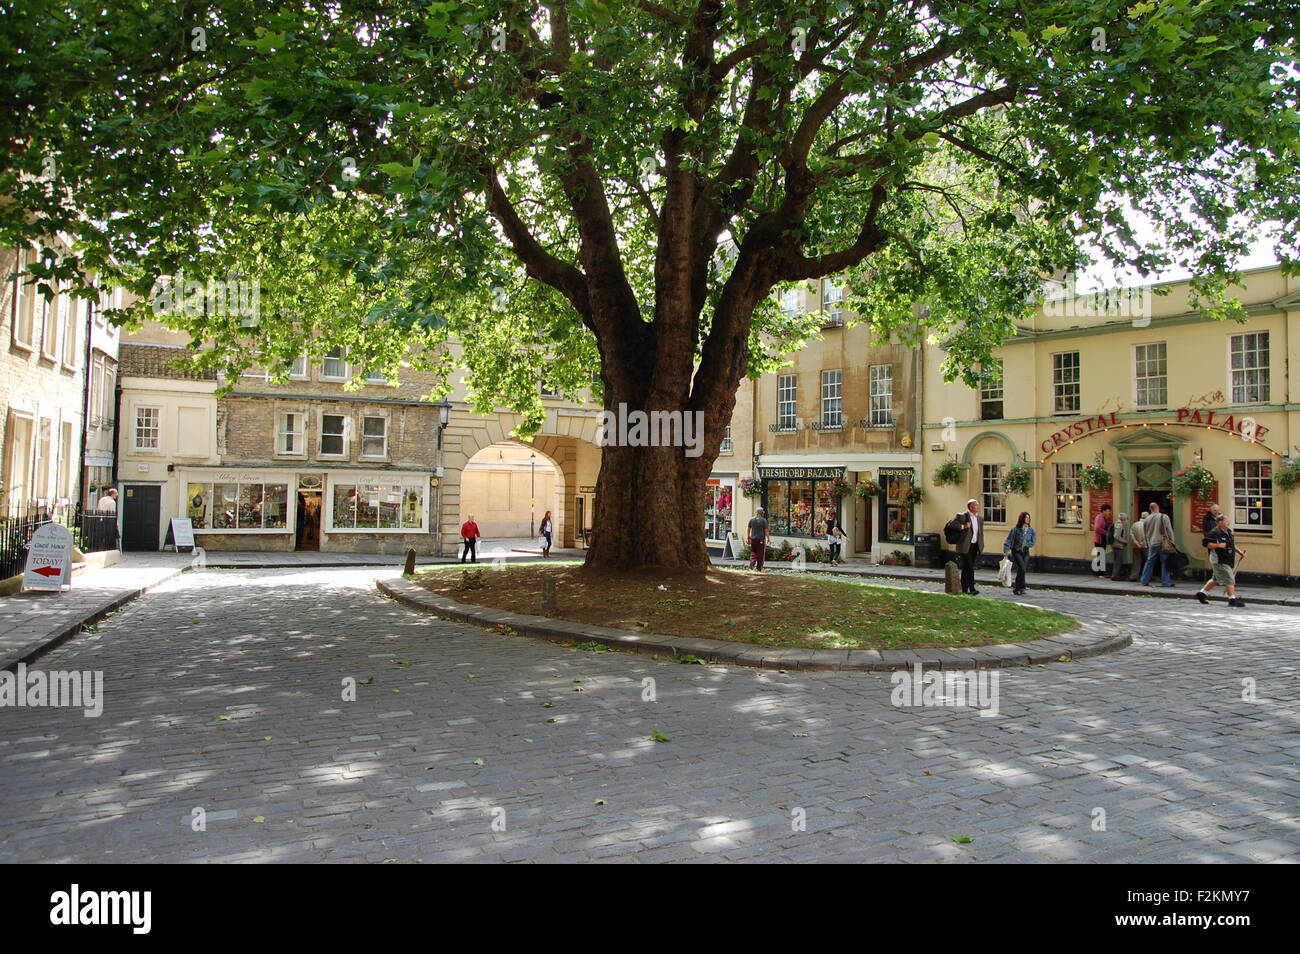 Plaza adoquinada y tiendas a la sombra de un árbol grande en Abbey verde en la ciudad de Bath, Inglaterra Foto de stock